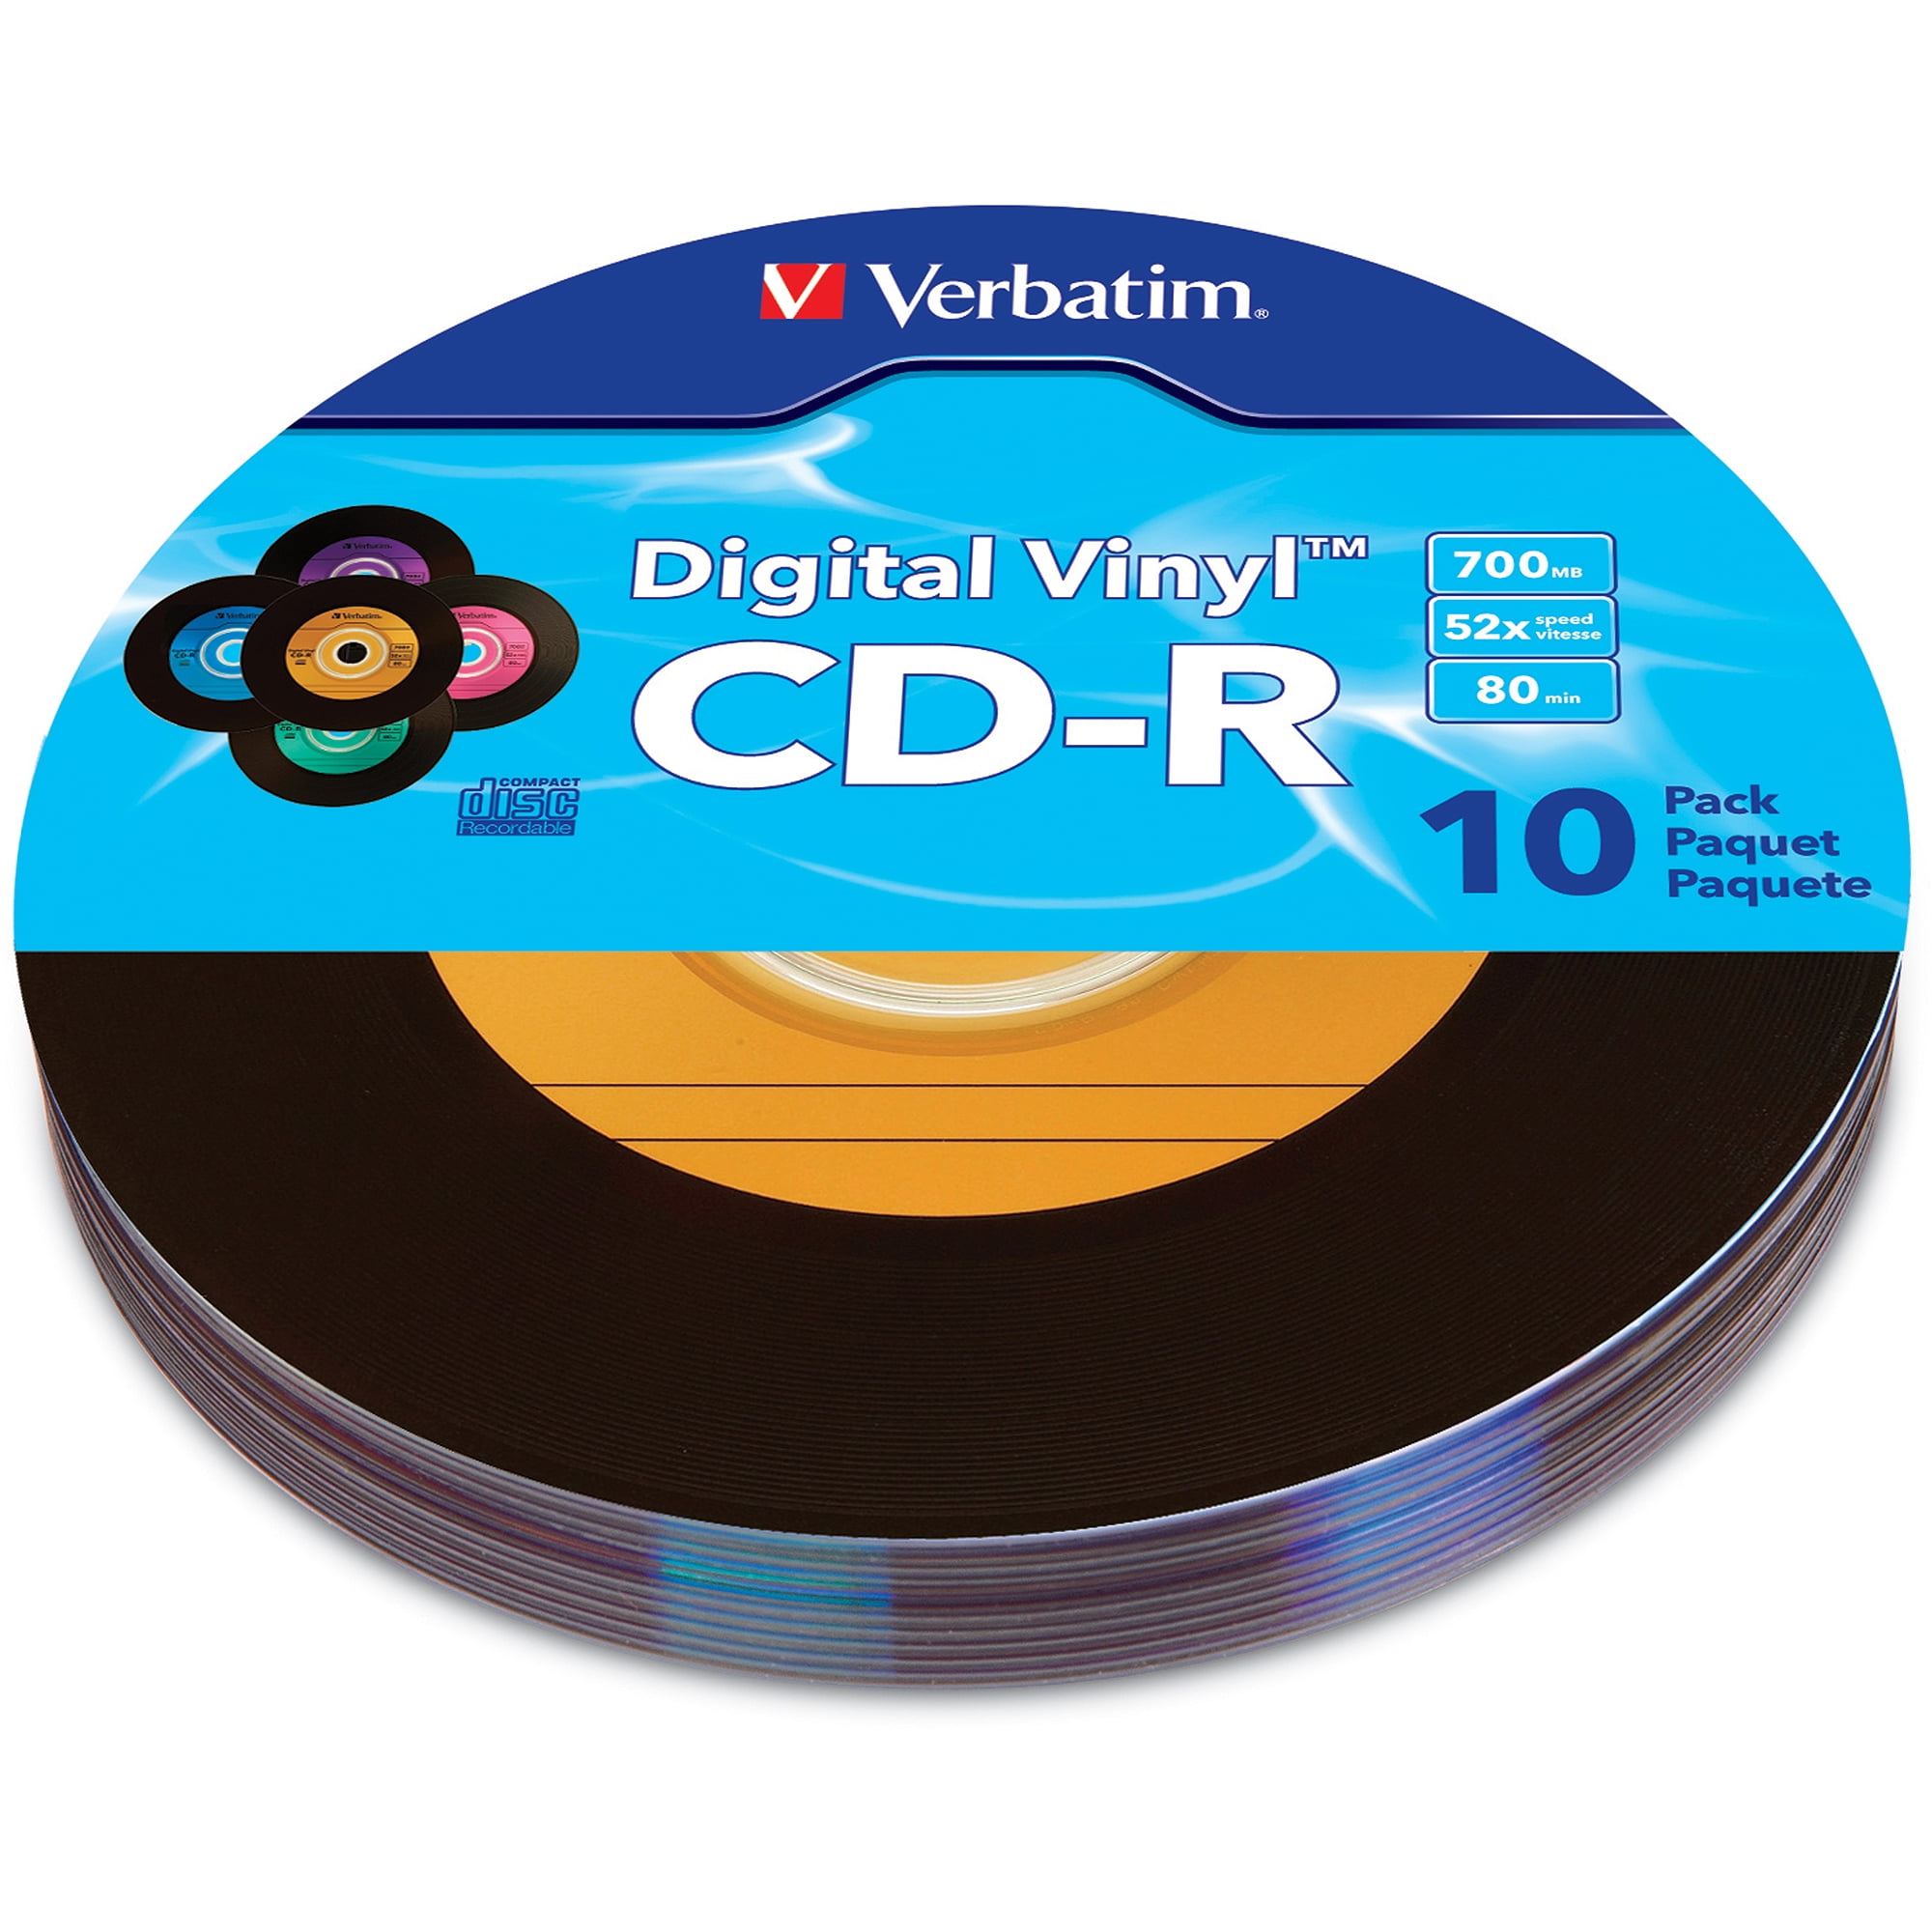 Verbatim Digital Vinyl Cd R 80 Min 700mb 10pk Multi Color Walmart Com Walmart Com